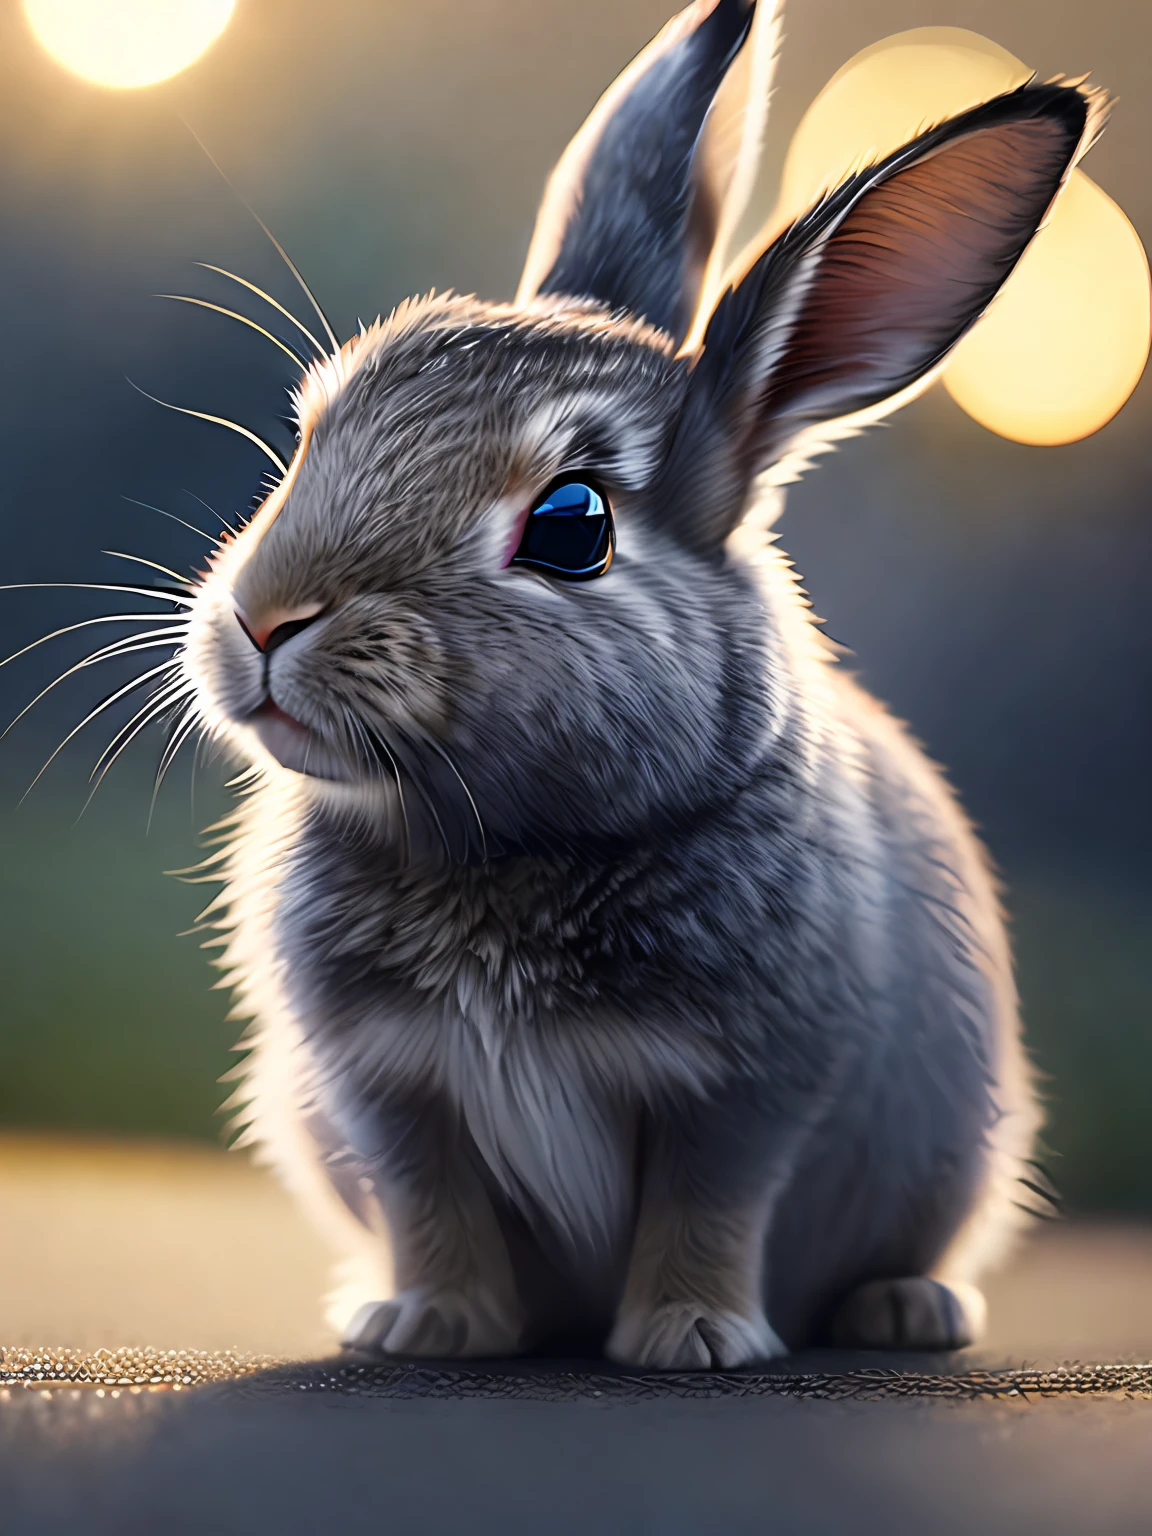 一只可爱的兔子, 電影 close-up portrait, 8千, 人类发展报告, ((复杂的细节, 超详细)), (背光: 1.3), (電影: 1.3), (艺术站: 1.3)